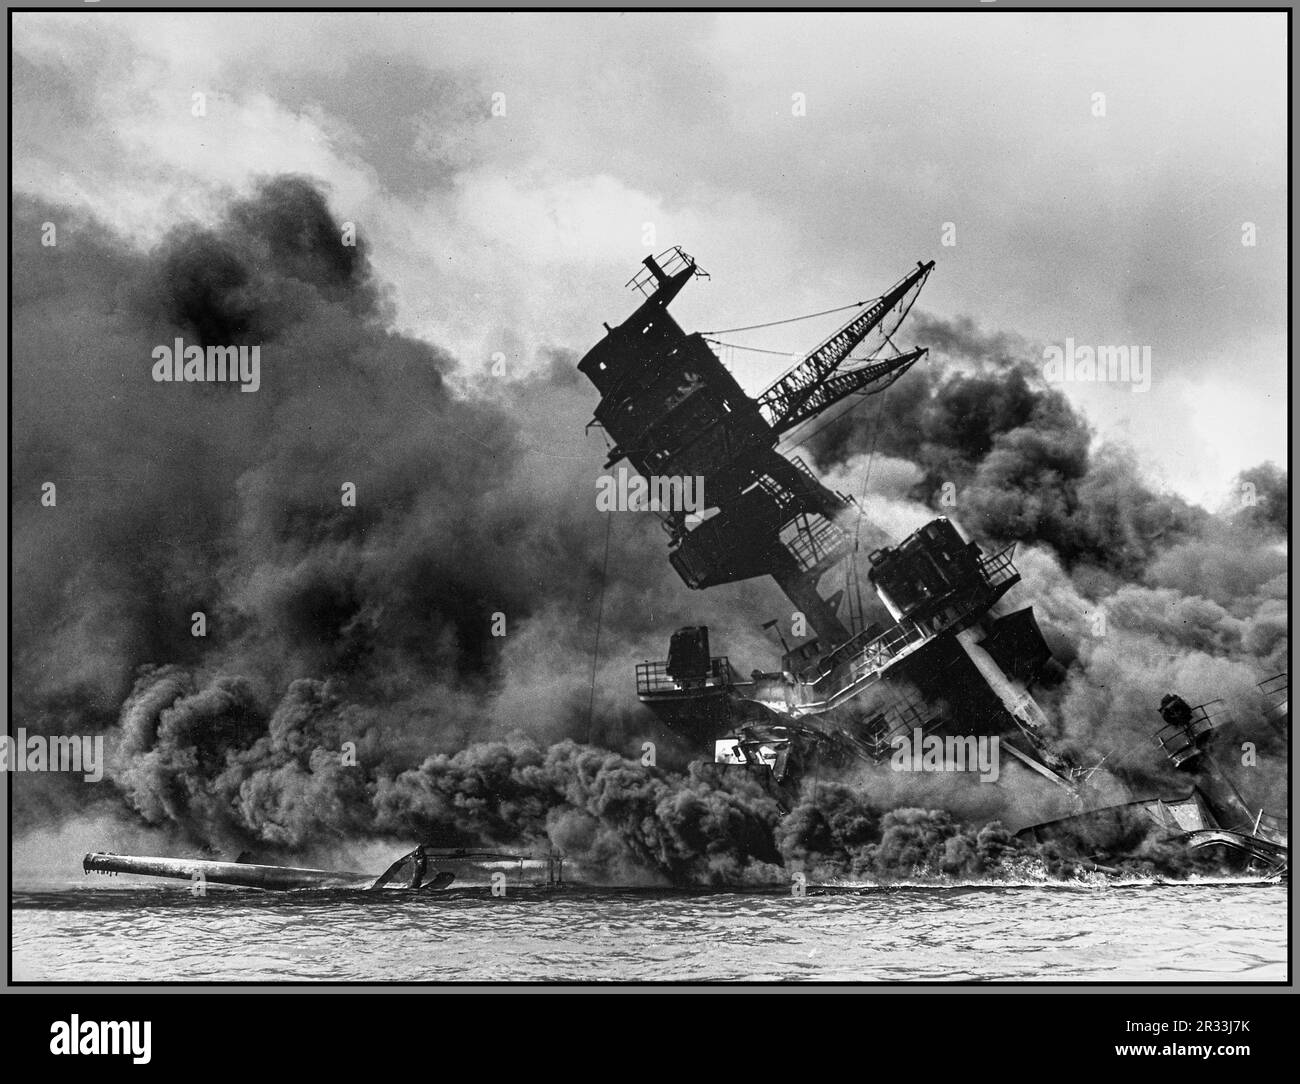 El USS Arizona (BB-39) ardiendo después del ataque japonés a Pearl Harbor, 7 de diciembre de 1941. El USS Arizona se hundió en Pearl Harbor. El barco descansa en el fondo del puerto. La estructura de soporte del mástil trípode delantero se ha colapsado después de que el cargador delantero explotó. WW2 Segunda Guerra Mundial Segunda Guerra Mundial Foto de stock